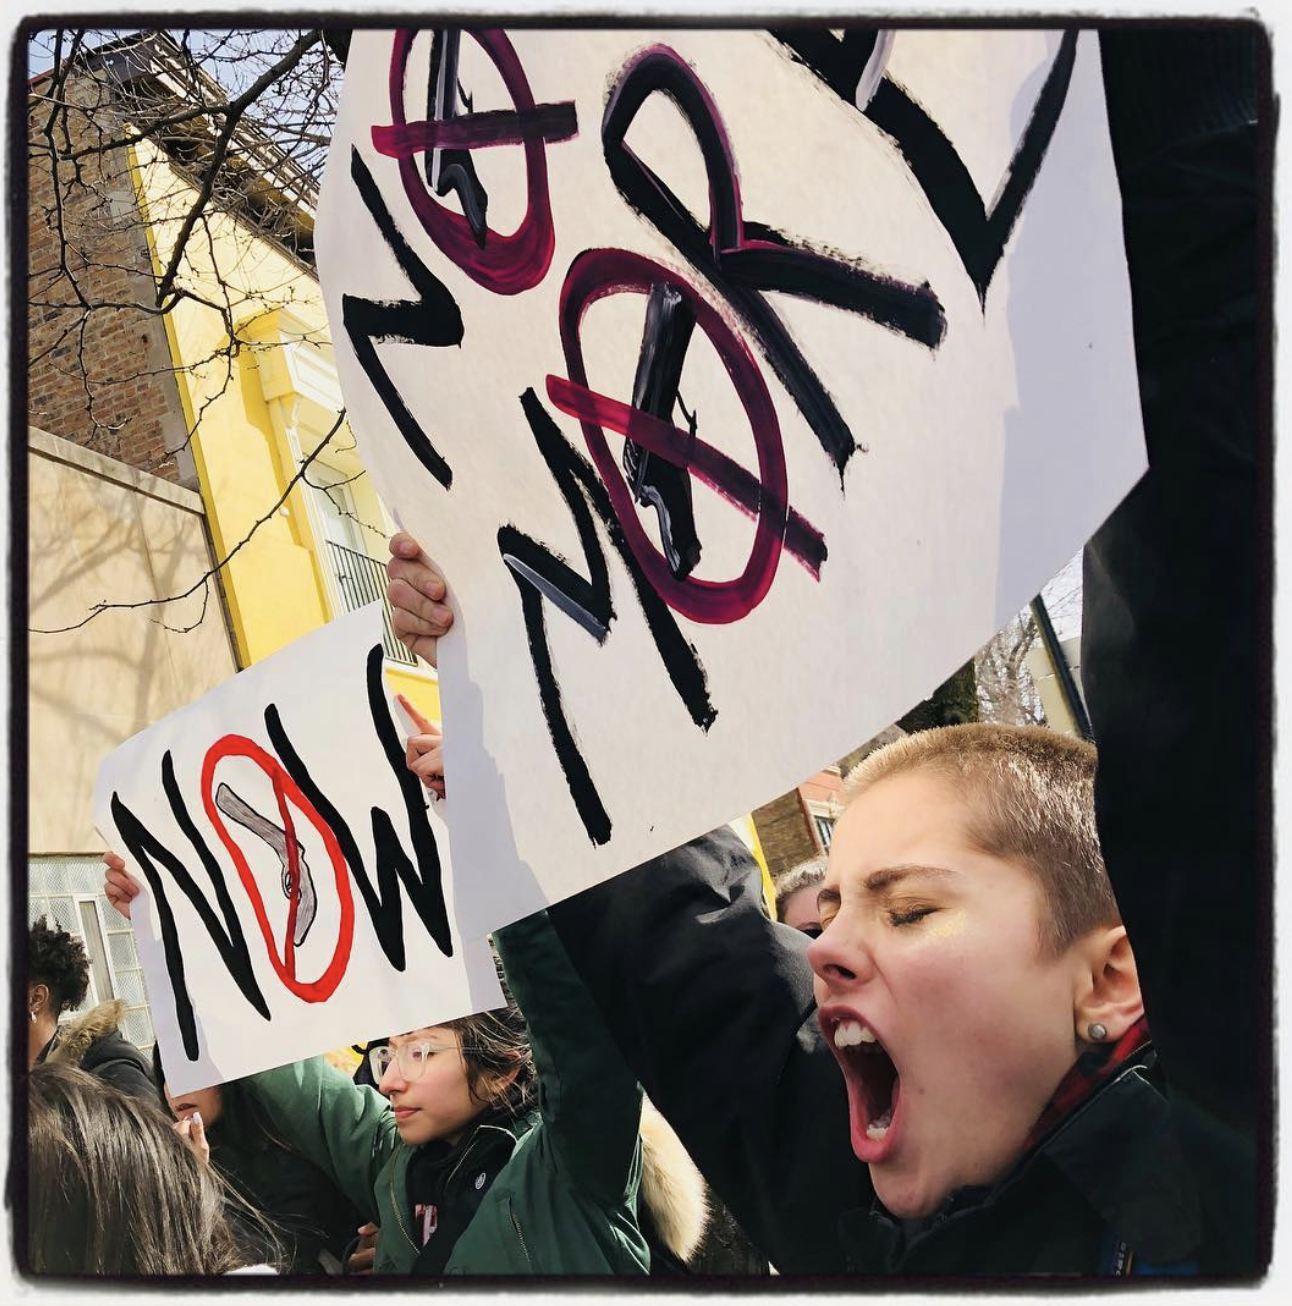  © Meg Handler, school walkout against guns, 2018 